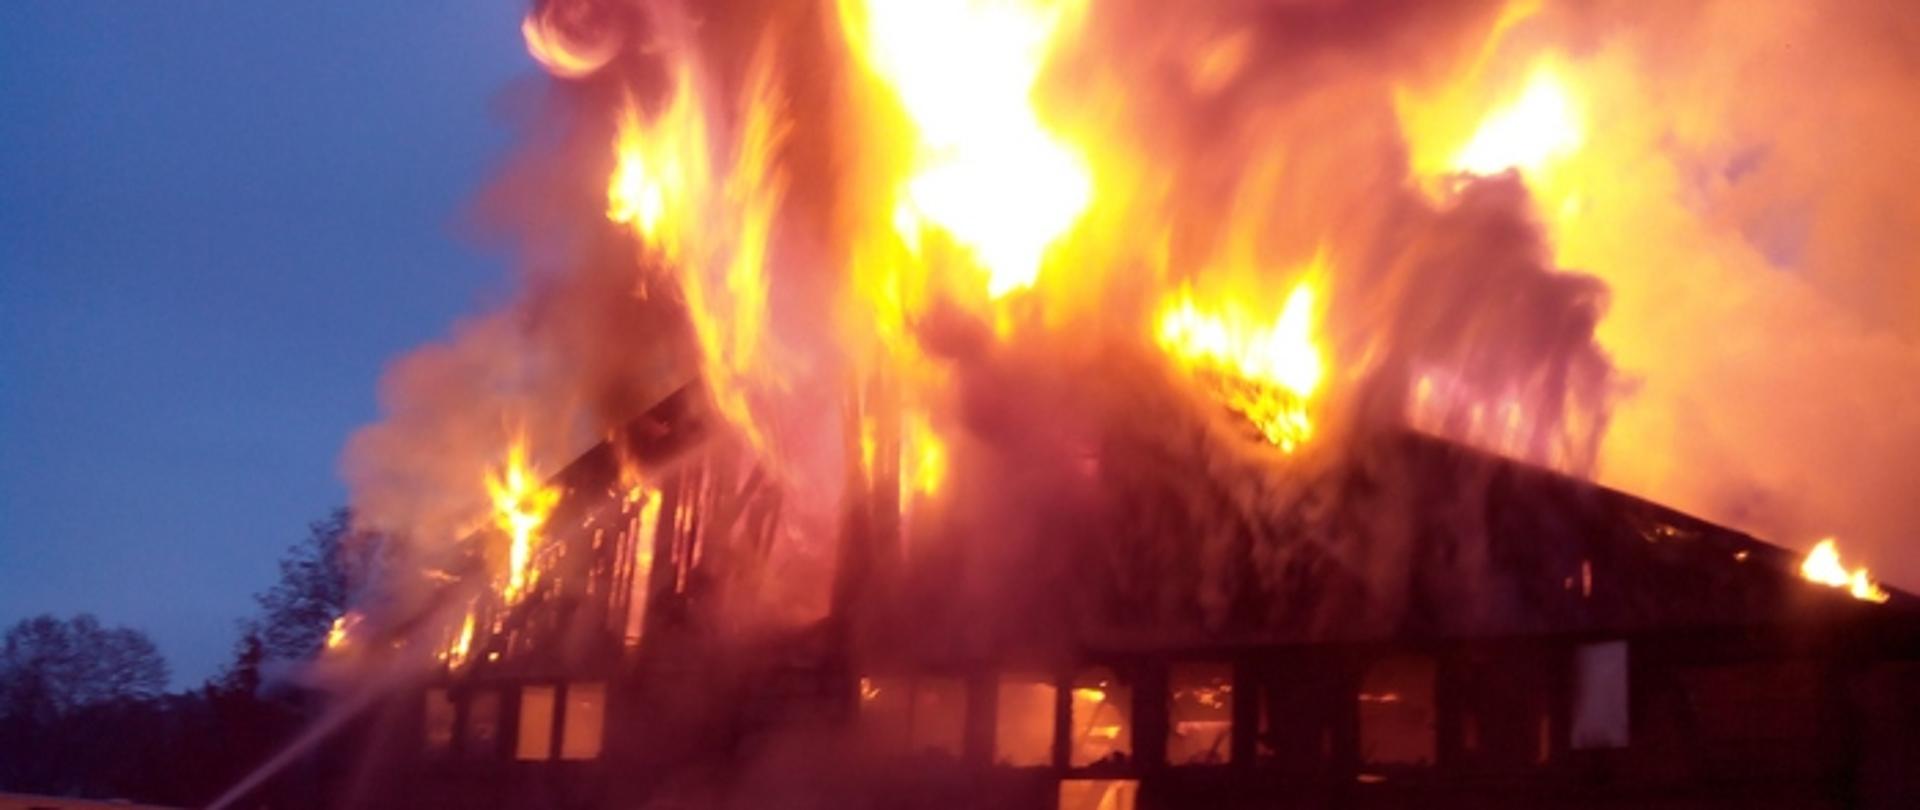 Zdjęcie przedstawia budynek w całości objęty pożarem